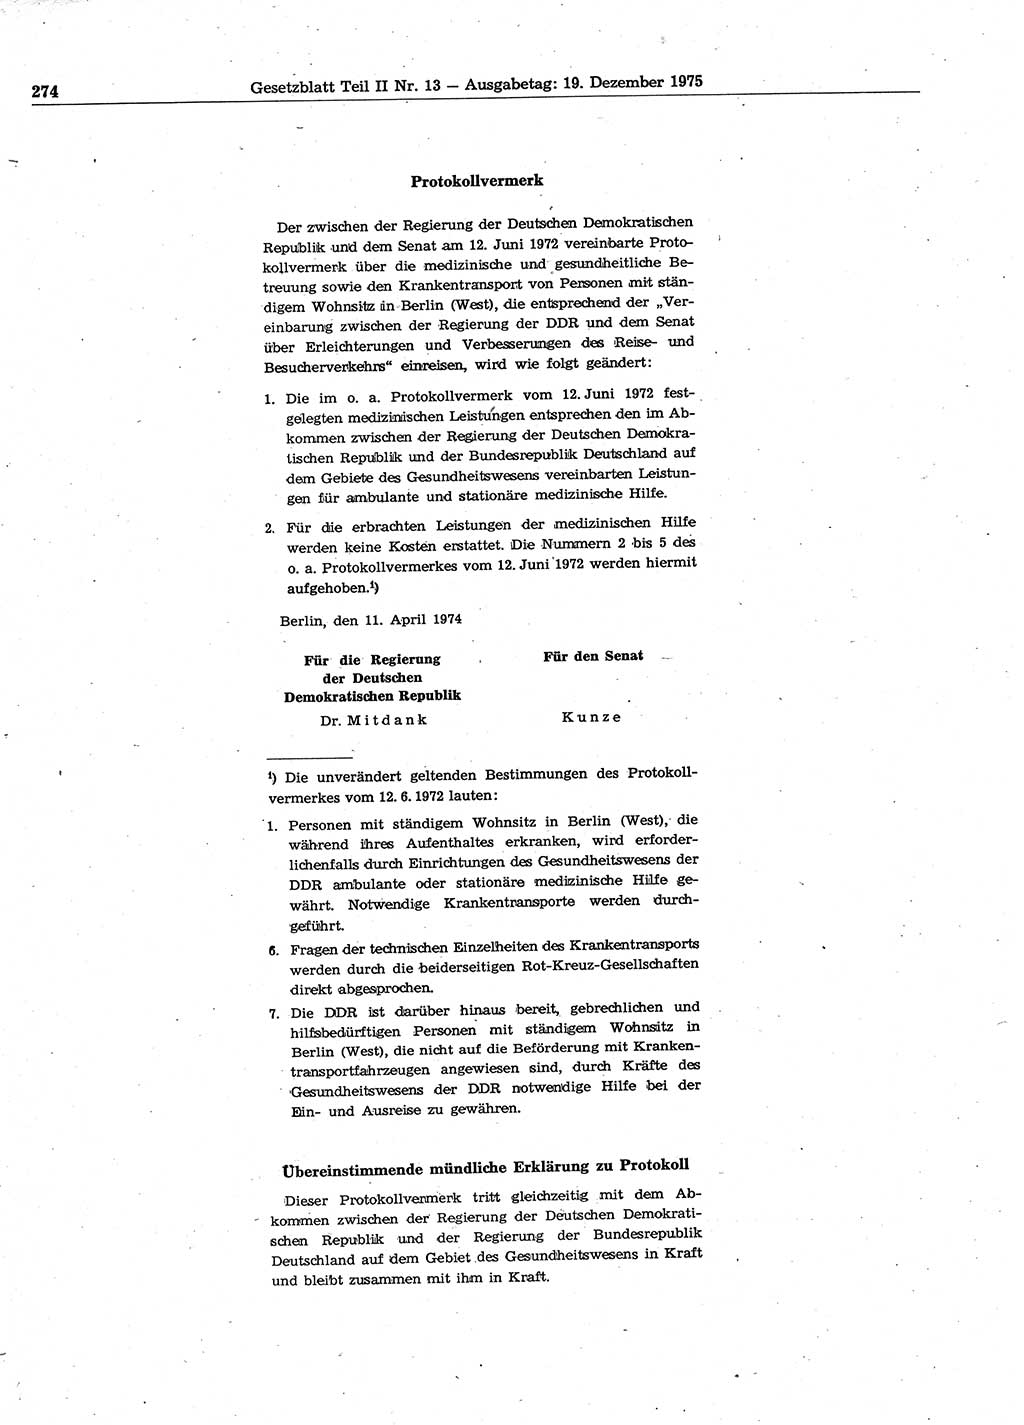 Gesetzblatt (GBl.) der Deutschen Demokratischen Republik (DDR) Teil ⅠⅠ 1975, Seite 274 (GBl. DDR ⅠⅠ 1975, S. 274)